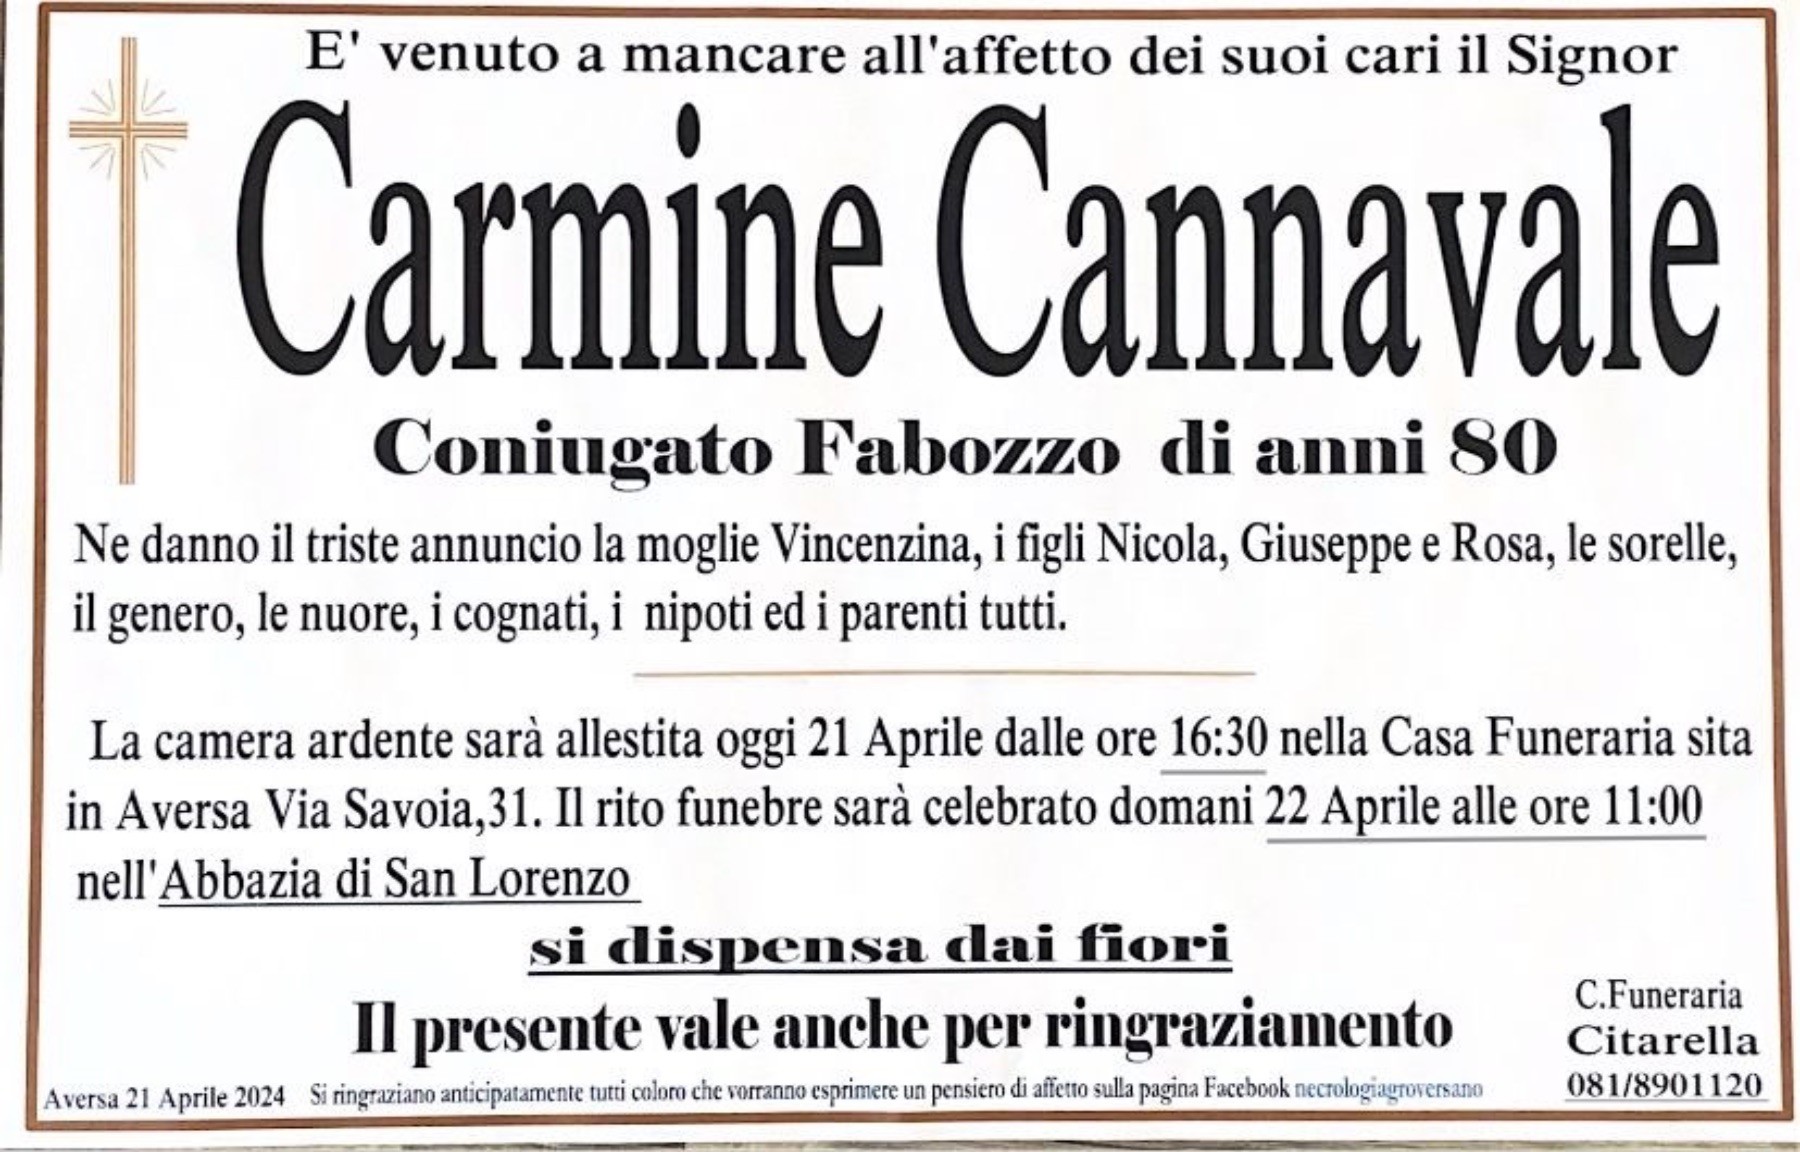 Carmine Cannavale